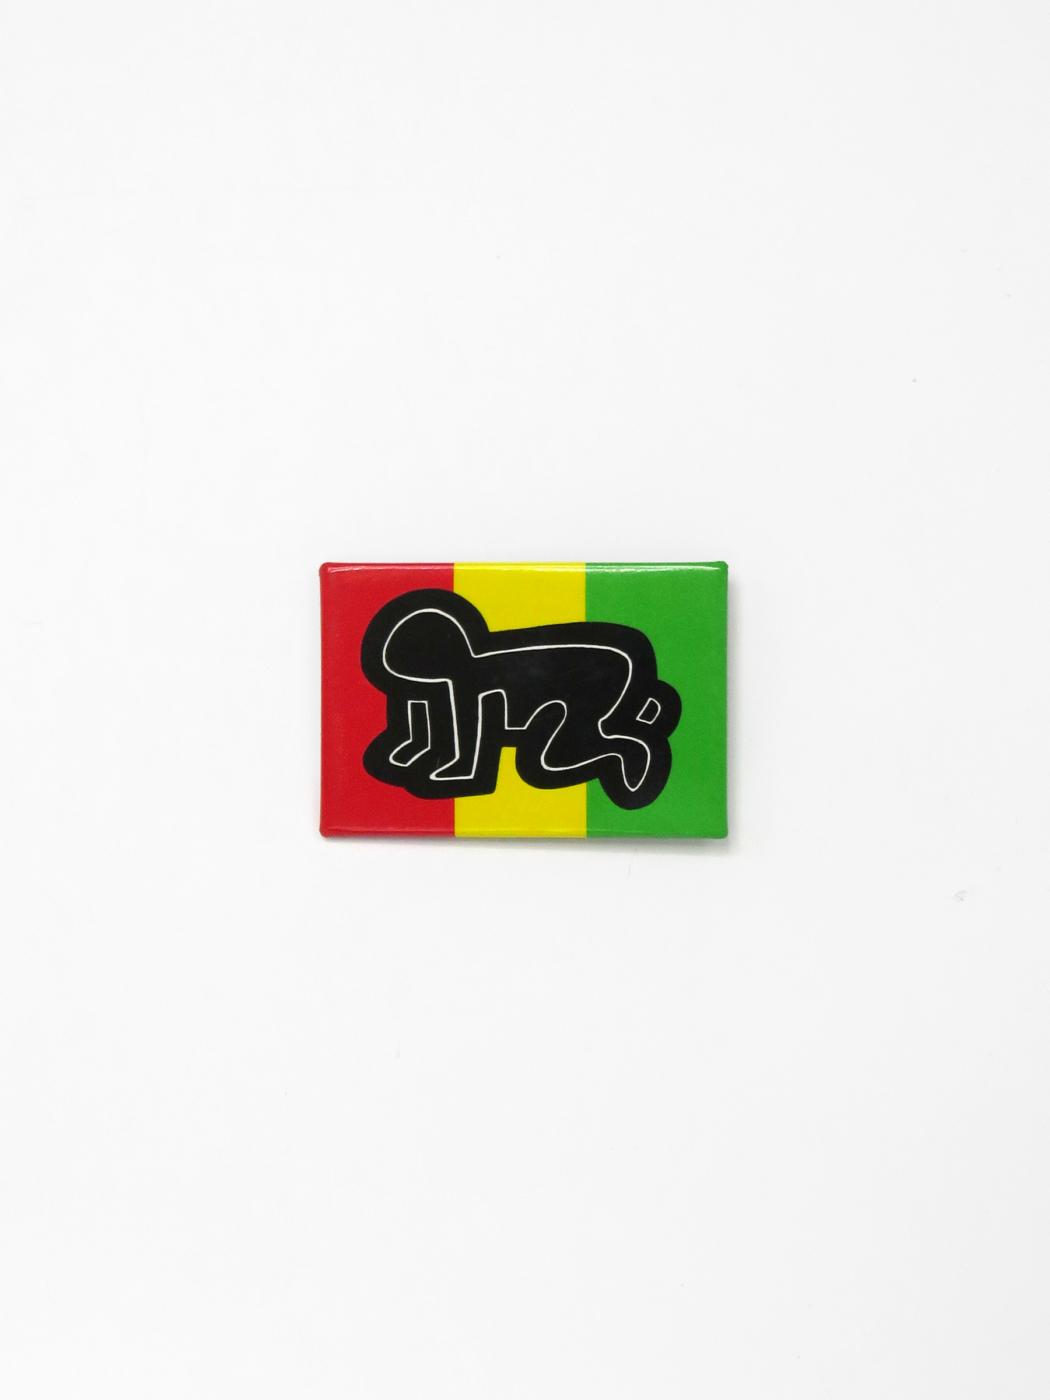 Keith Haring, Pop Shop Pin